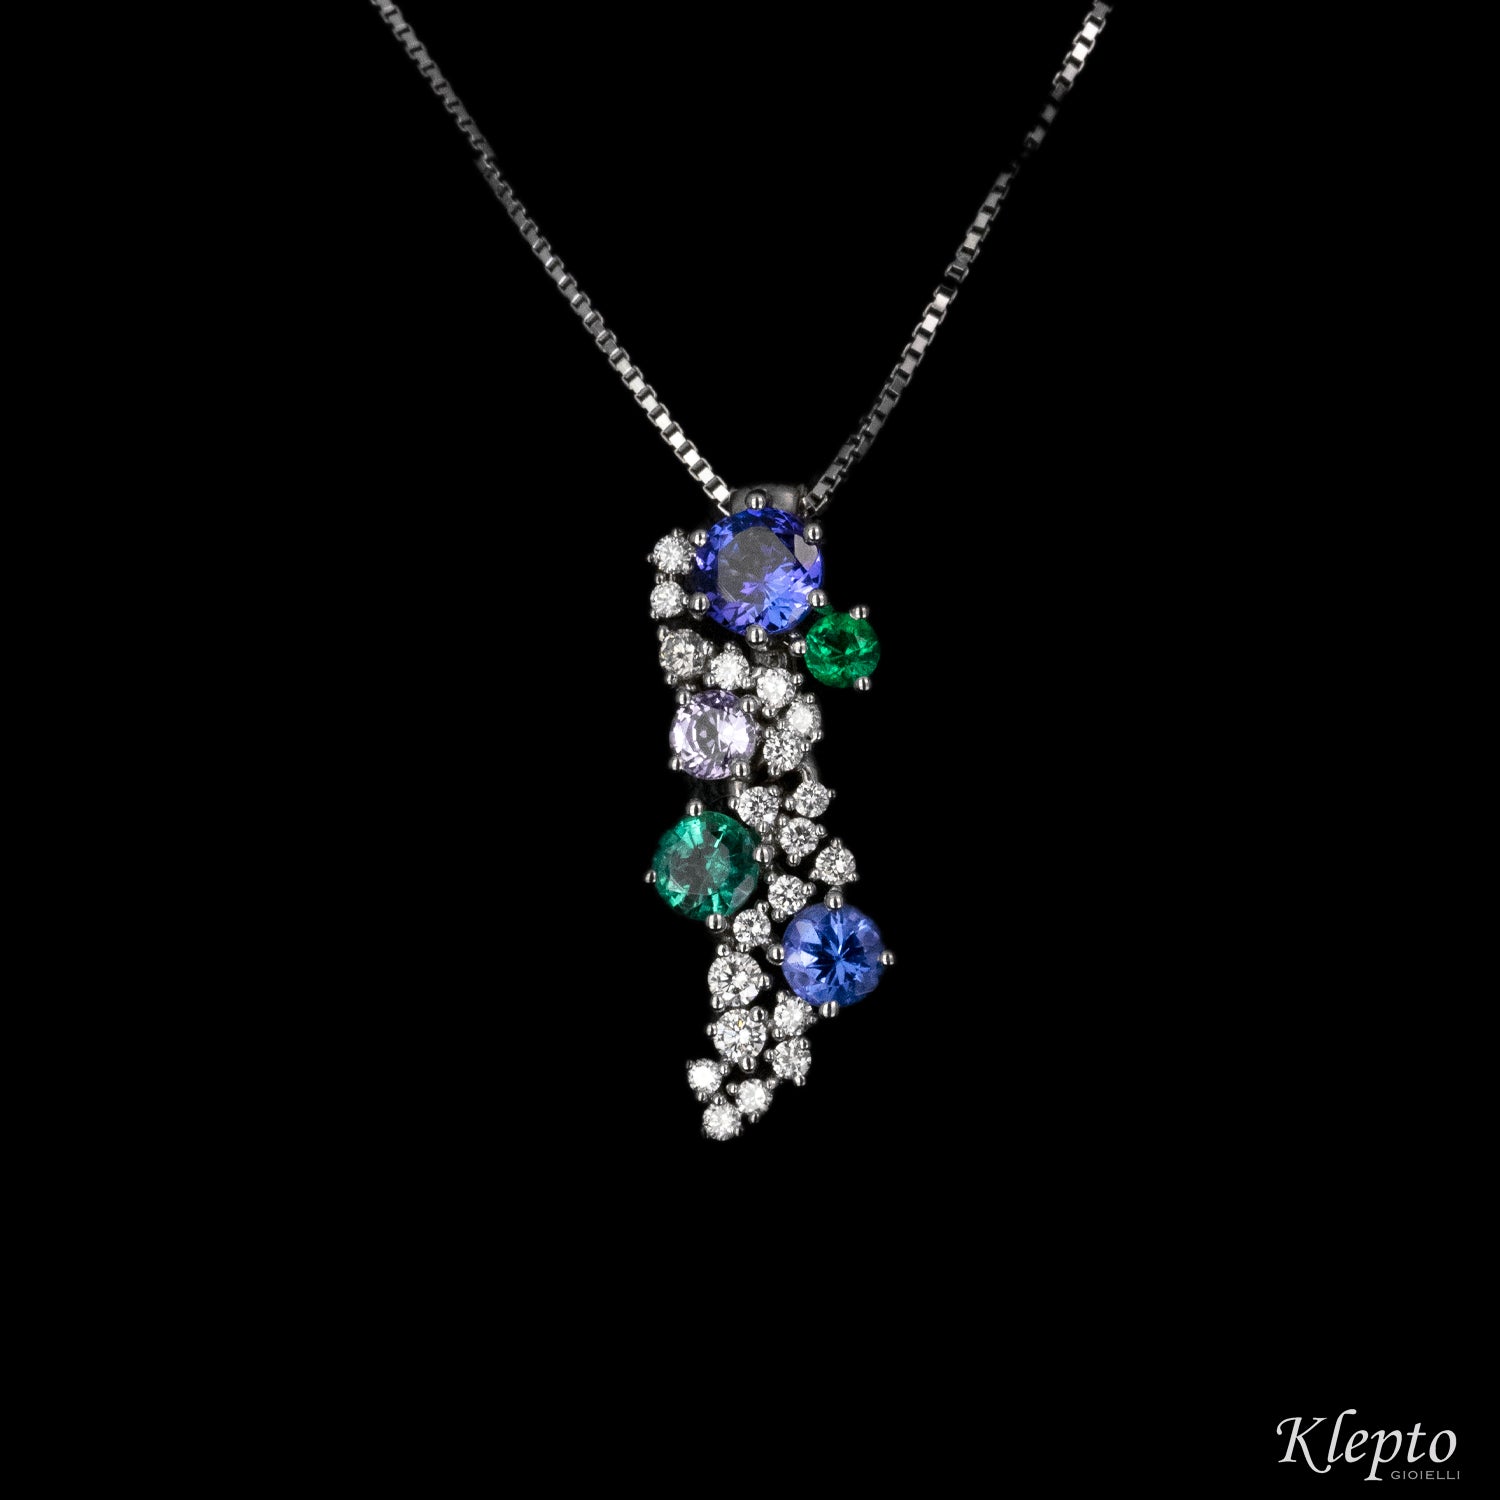 White gold pendant with Emerald, Tanzanite and Diamonds